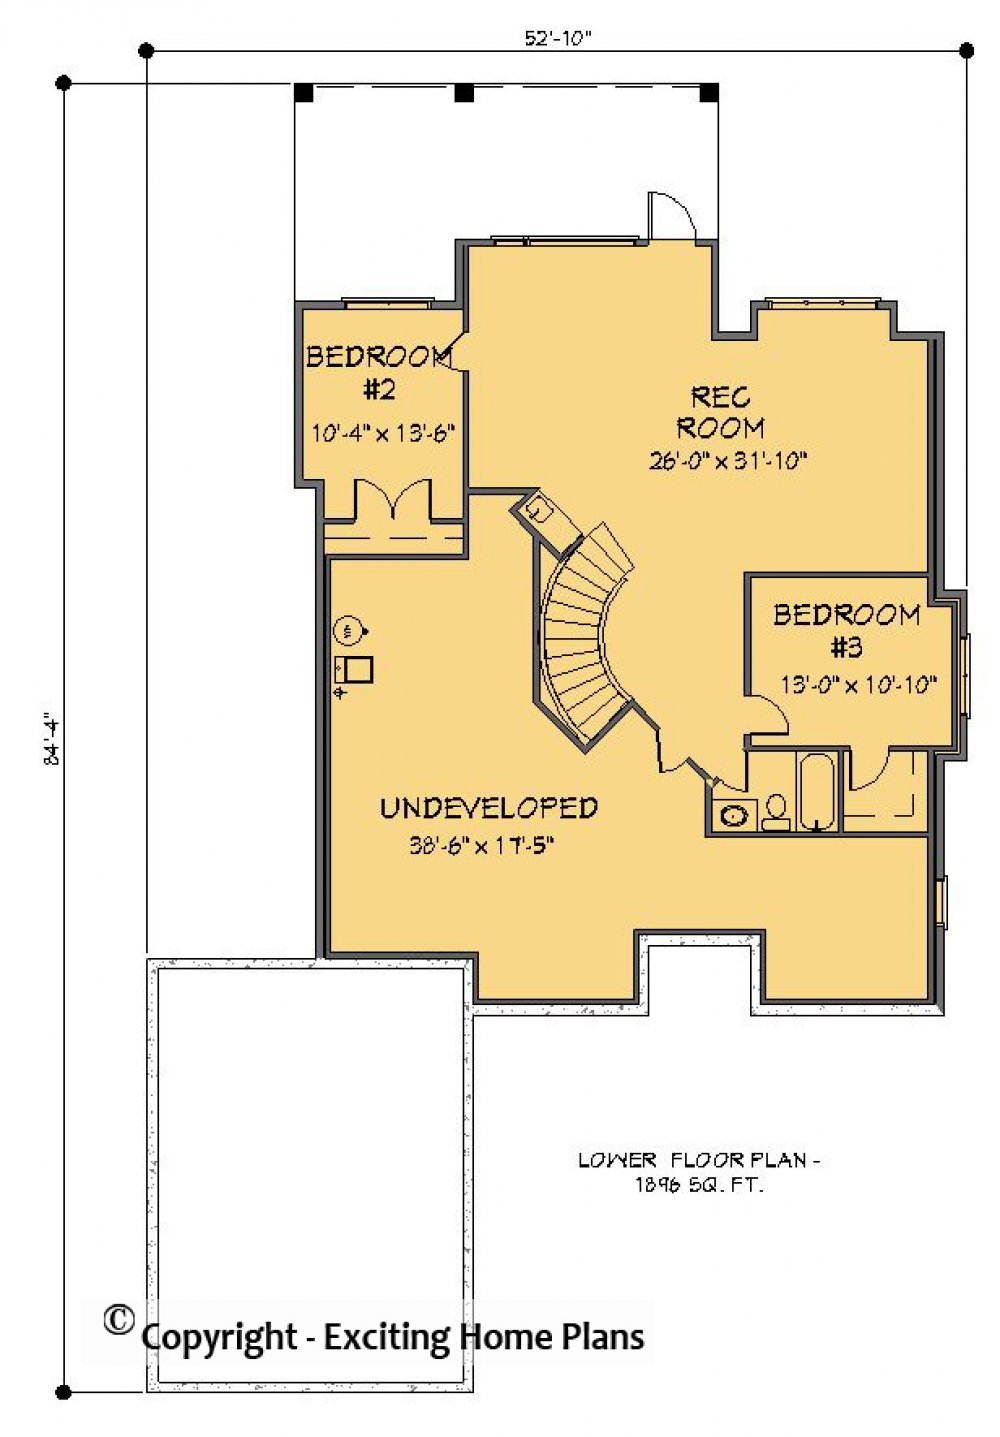 House Plan E1238-10 Lower Floor Plan